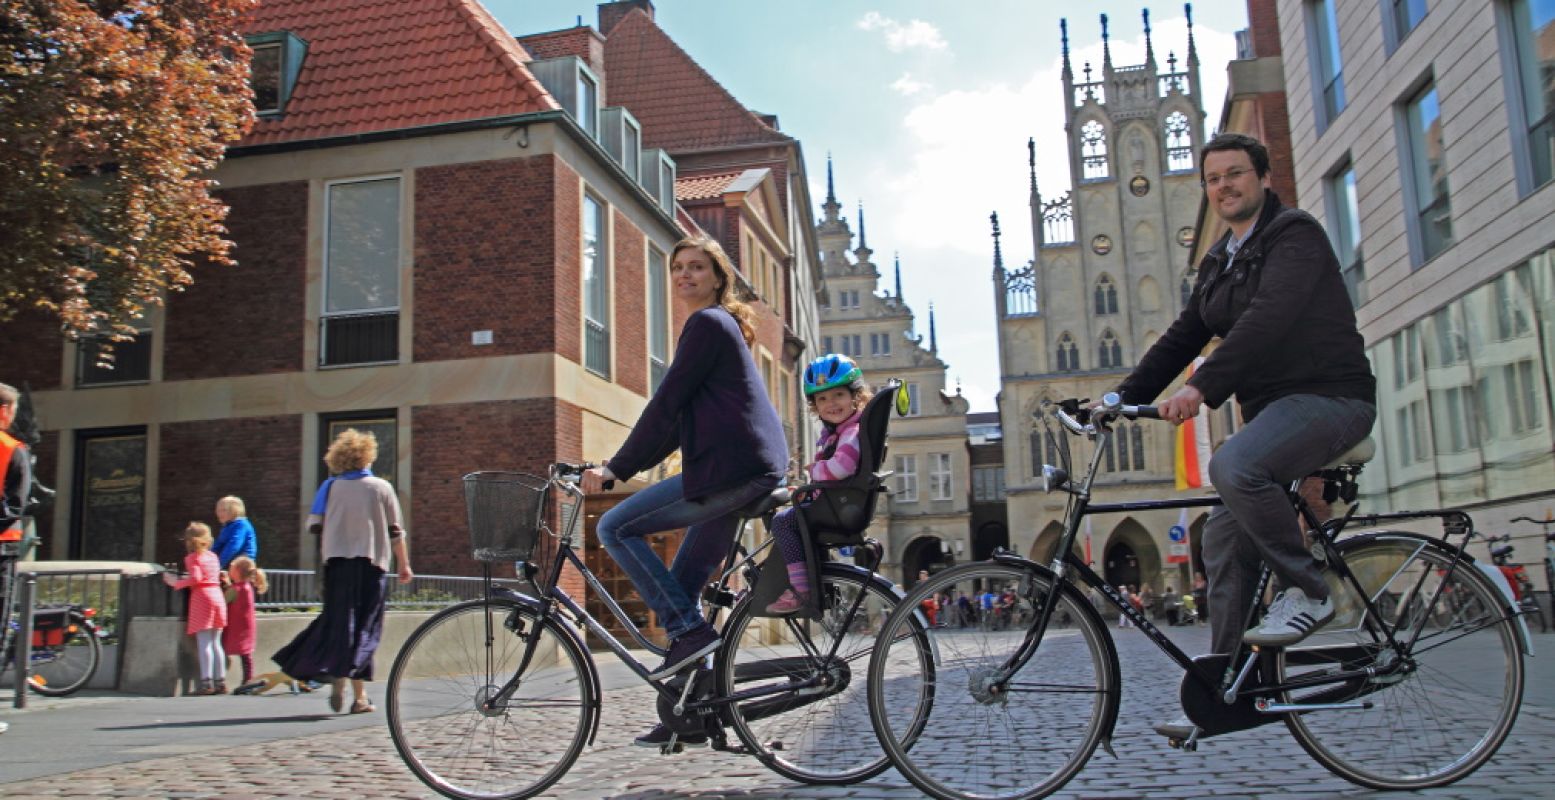 Ook over de grens kun je fijn fietsen. Veel Duitse steden hebben ook een prima netwerk van fietspaden, zoals hier in Münster. Foto: Presseamt Münster / Britta Roski.